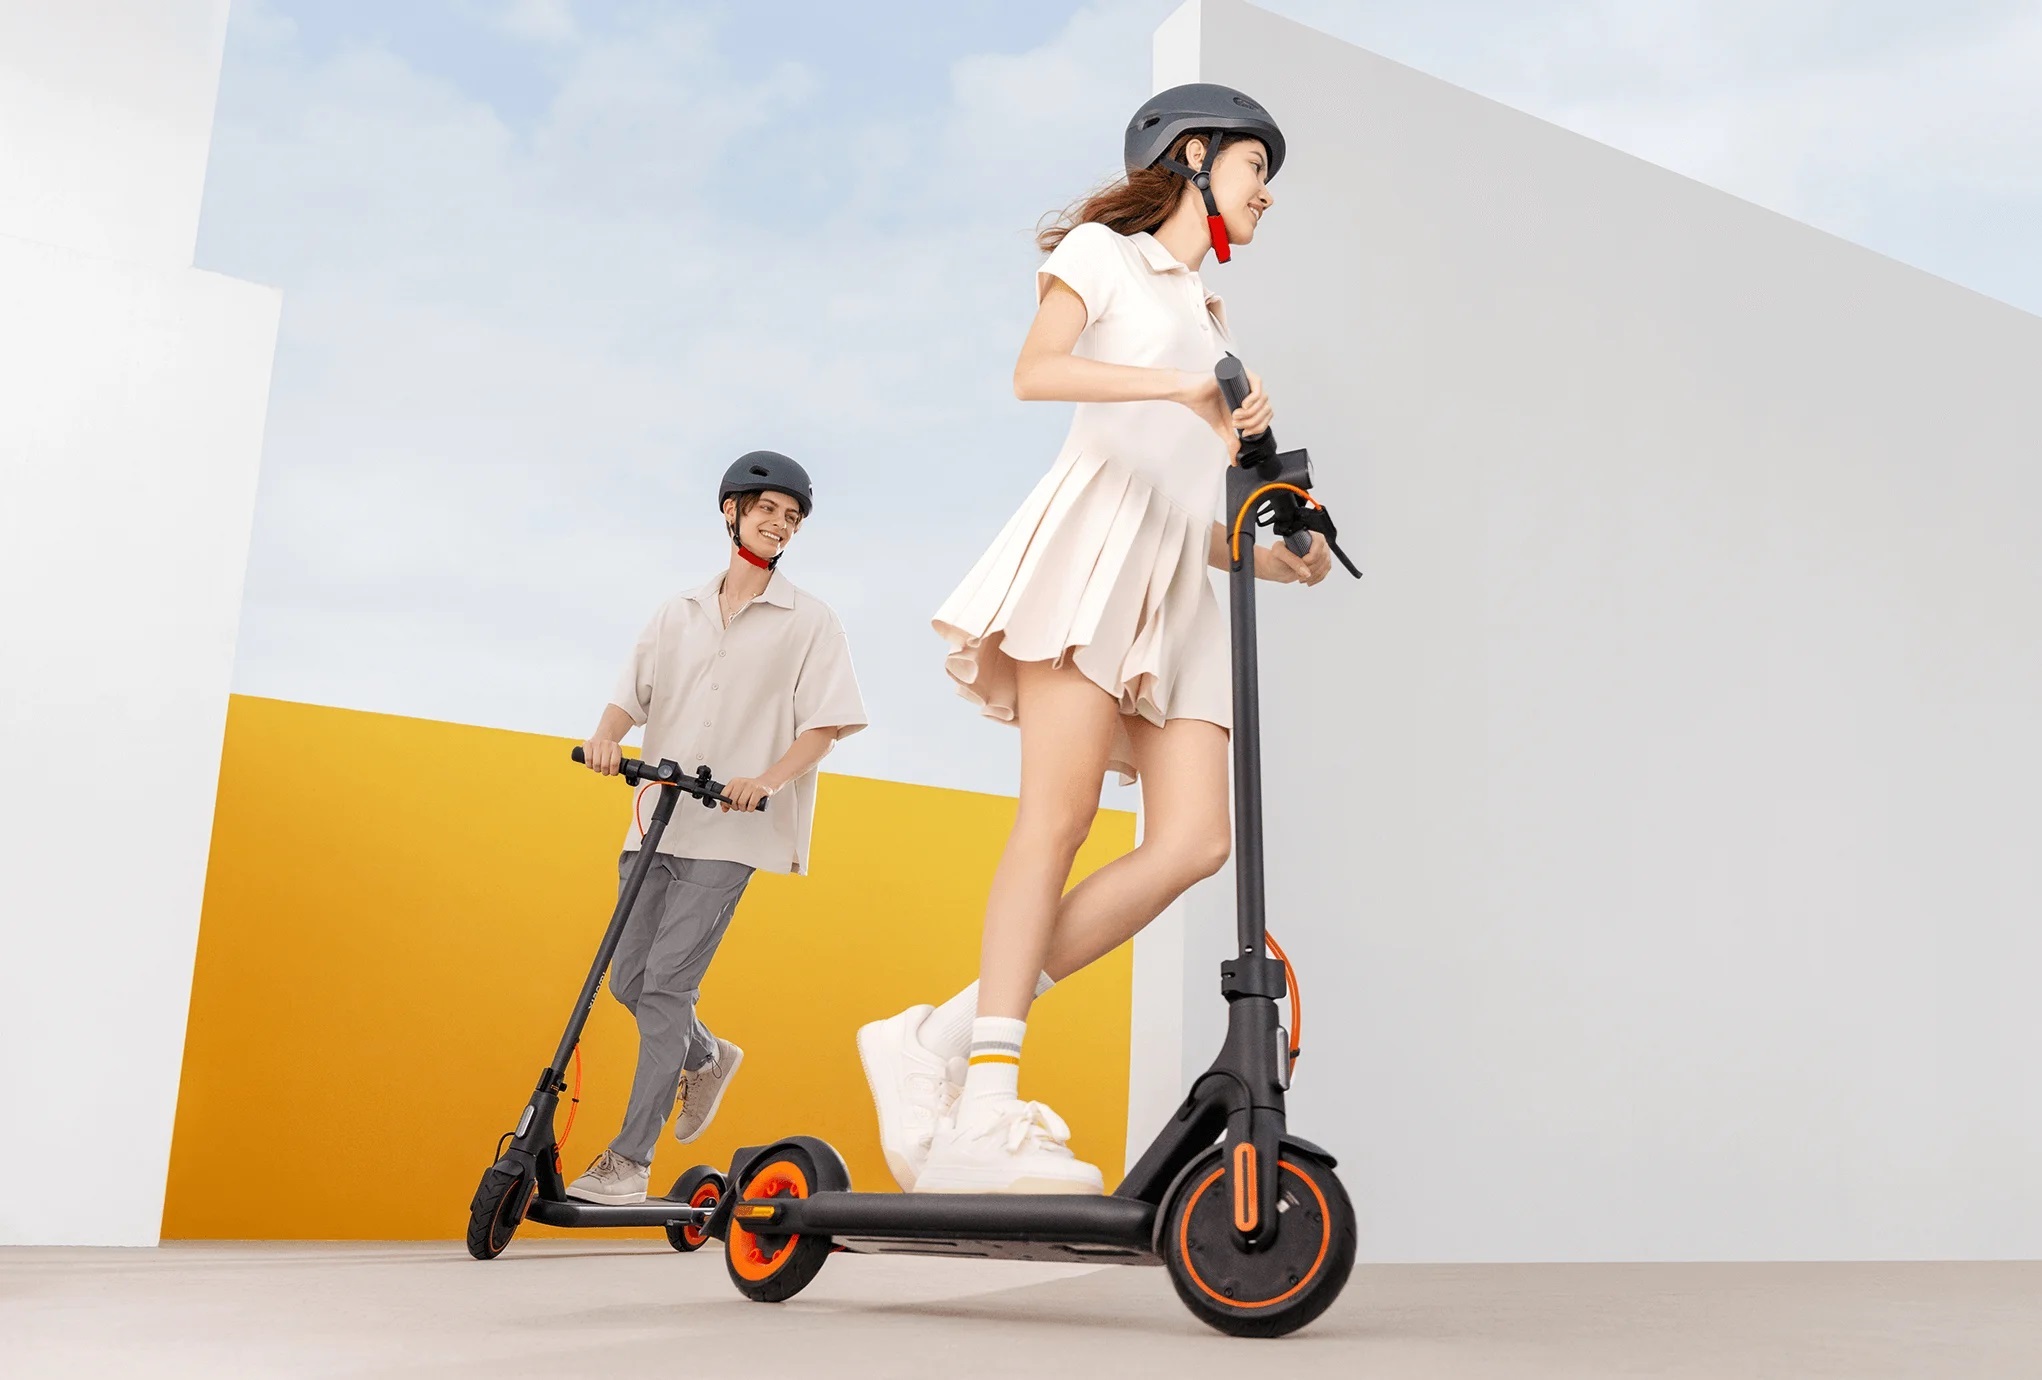 Xiaomi Electric Scooter 4 Go: ein preiswerter Elektroroller mit einem 450W Motor und einer Reichweite von 18km